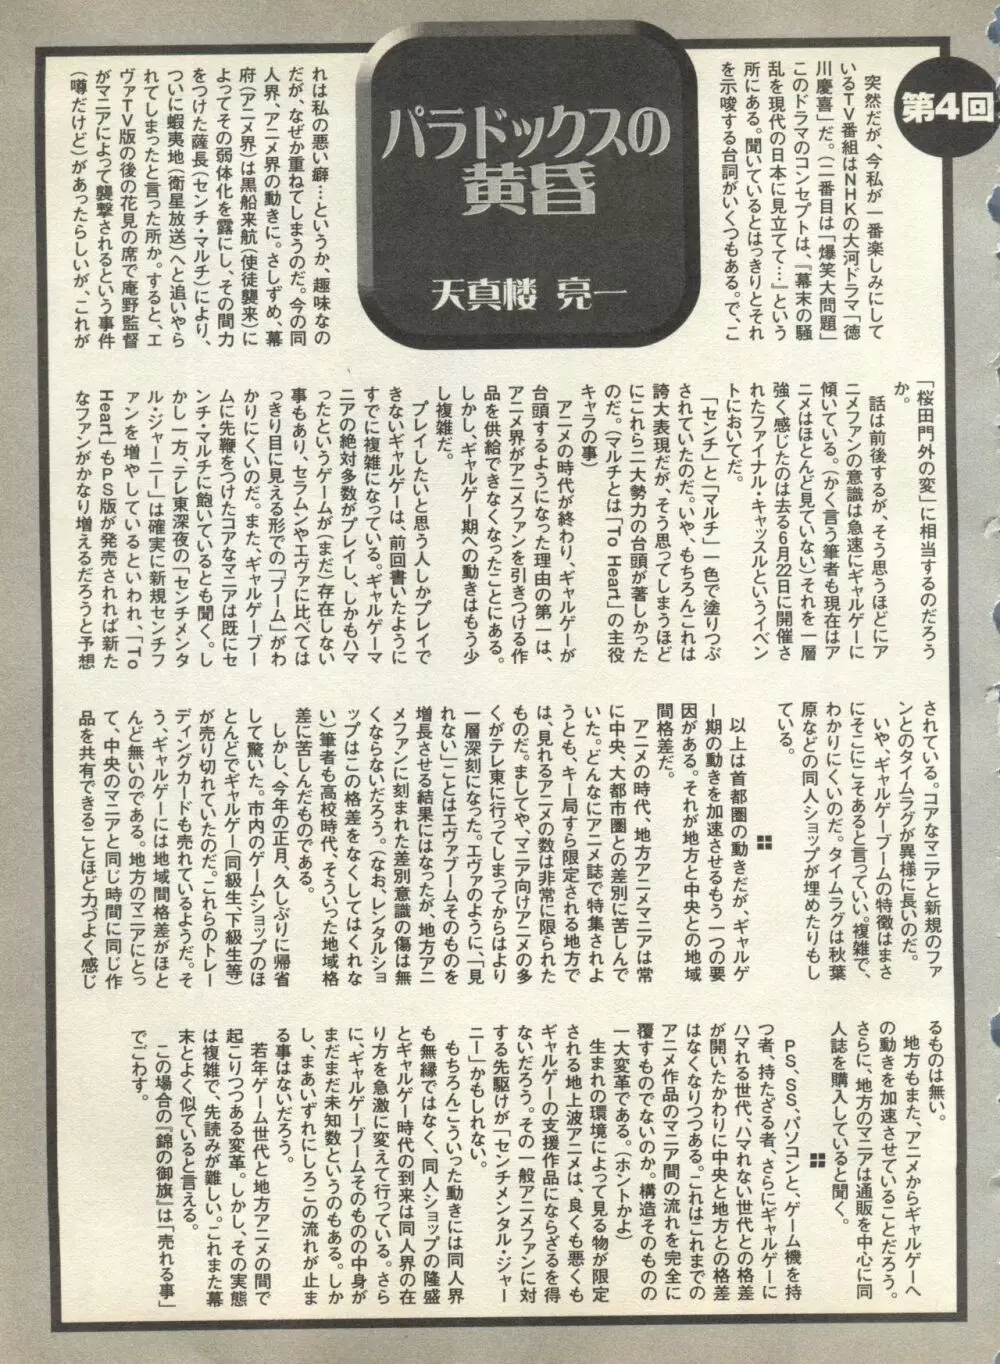 パイク Pai;kuu 1998 August Vol.12 葉月 255ページ